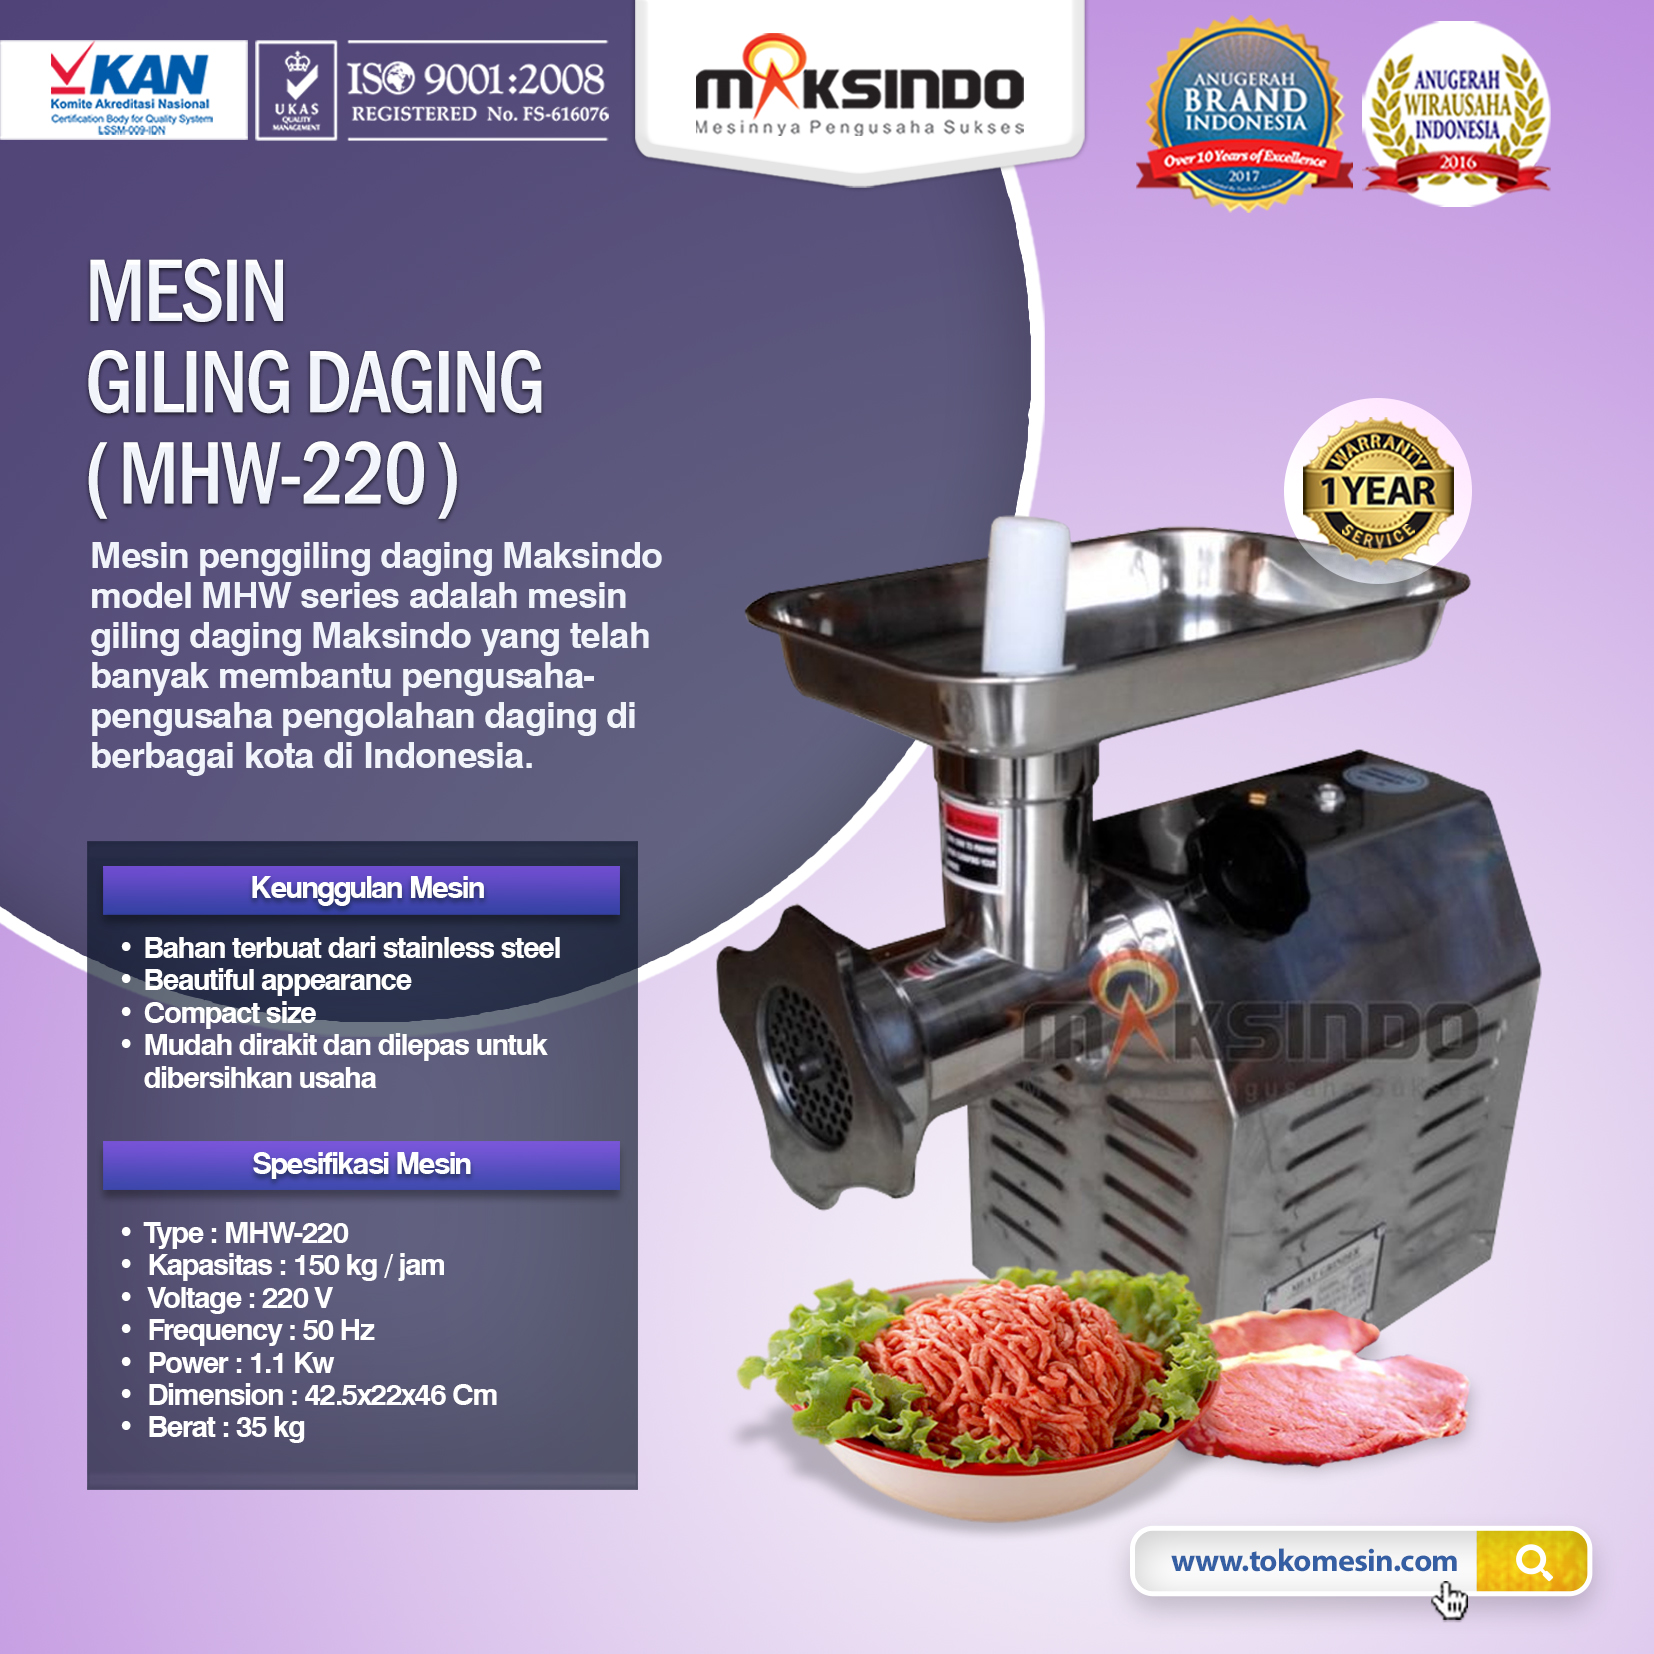 Mesin Giling Daging MHW-220